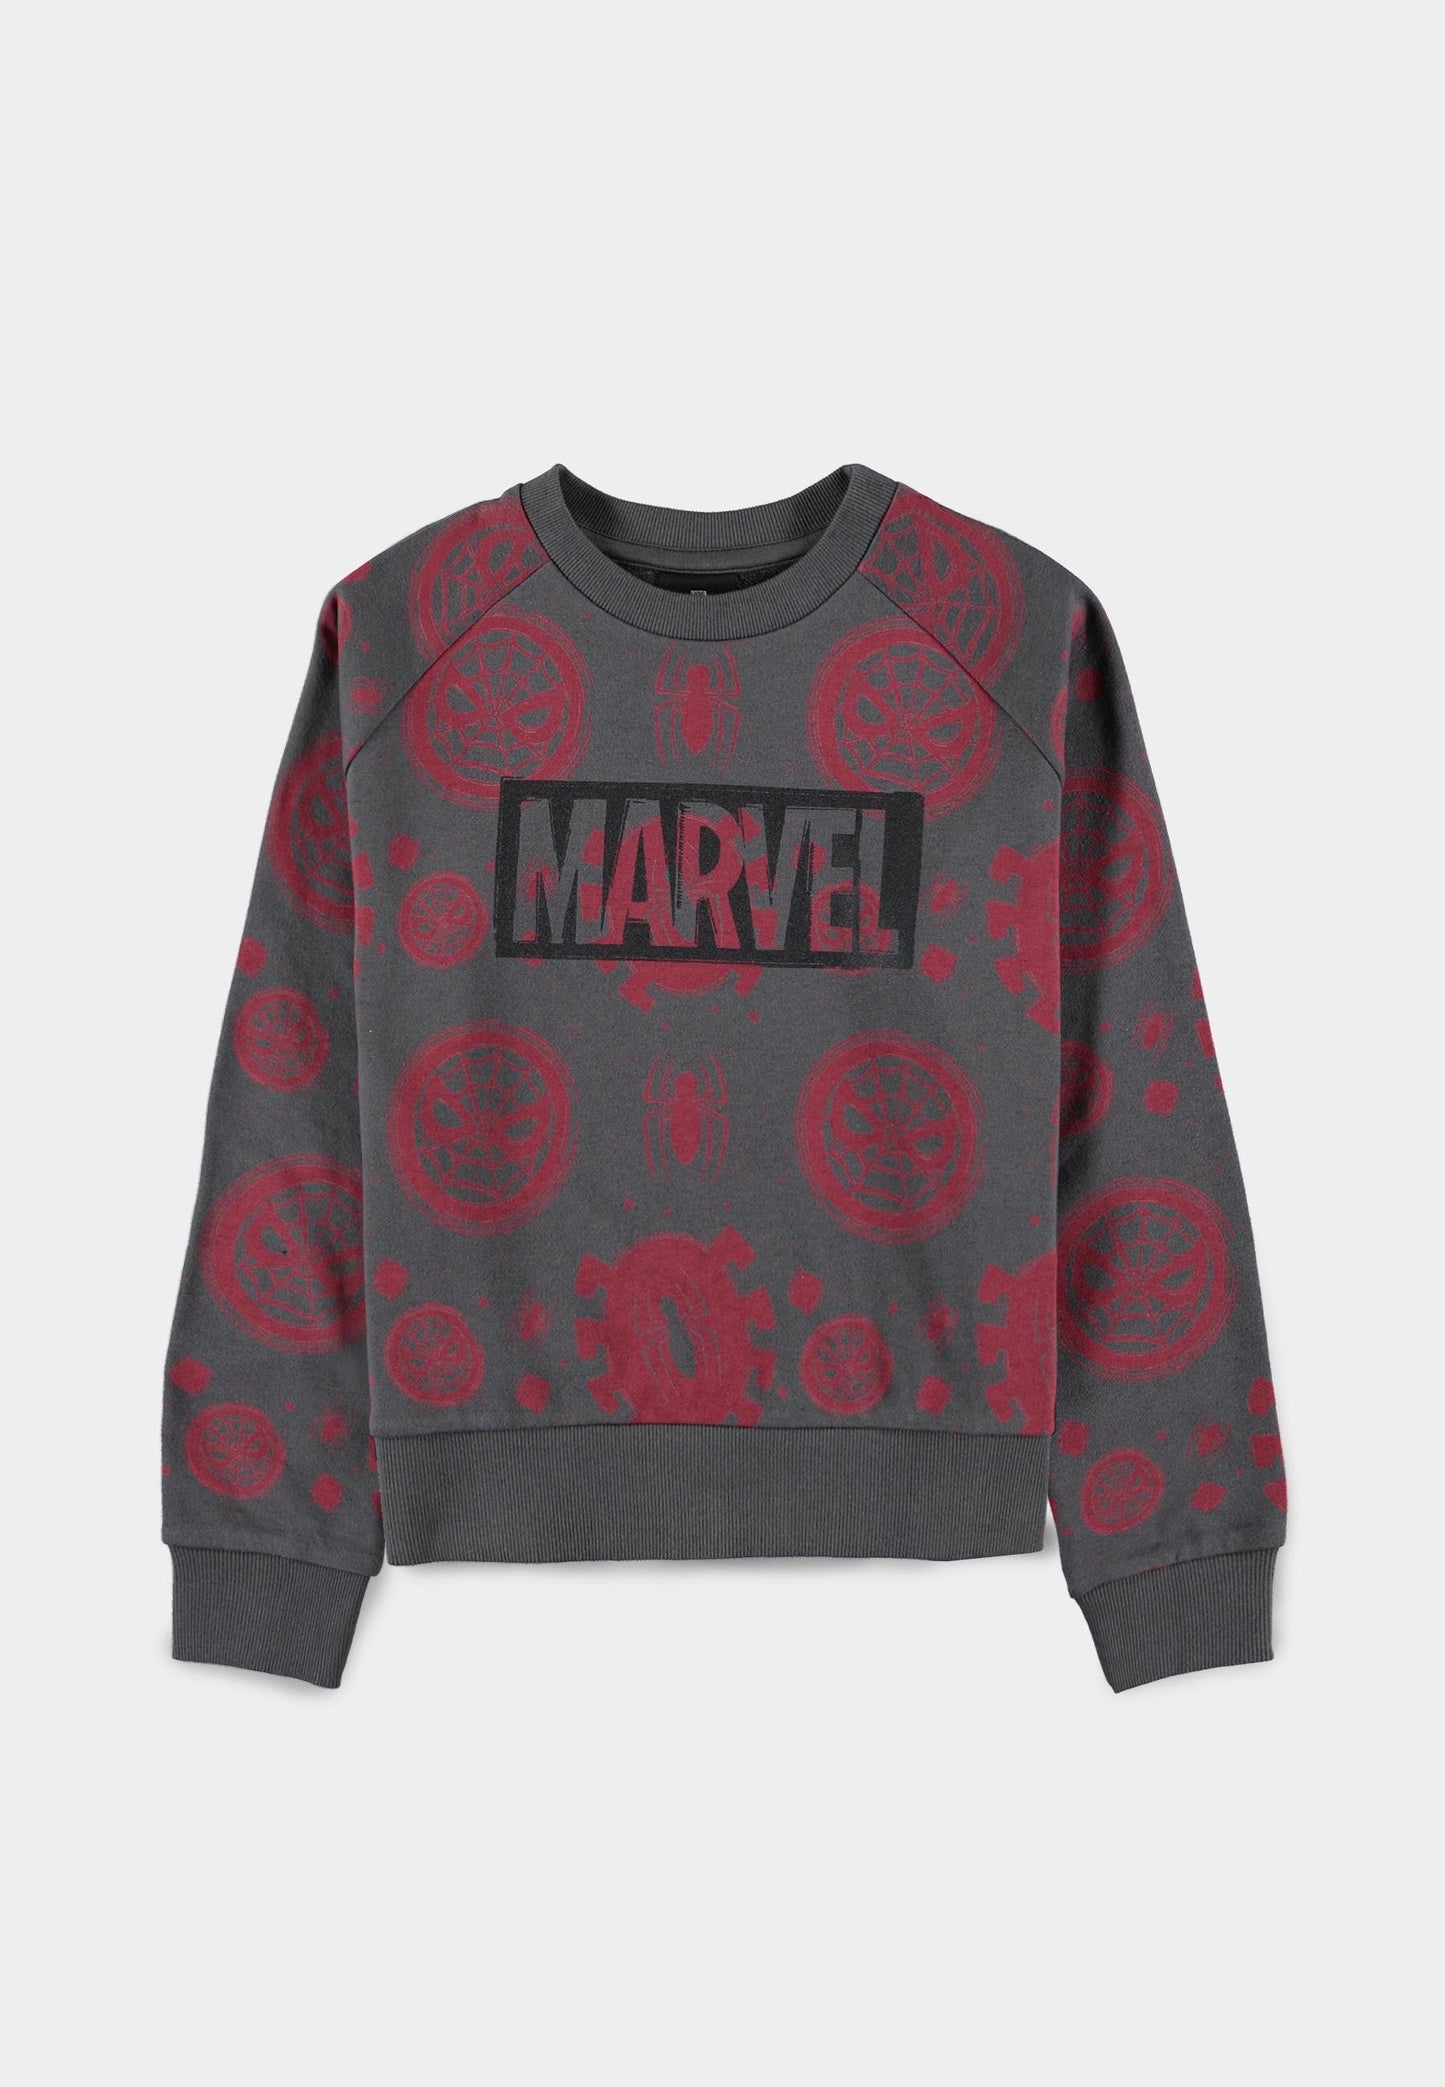 Spider-man - Girls Crew Sweater